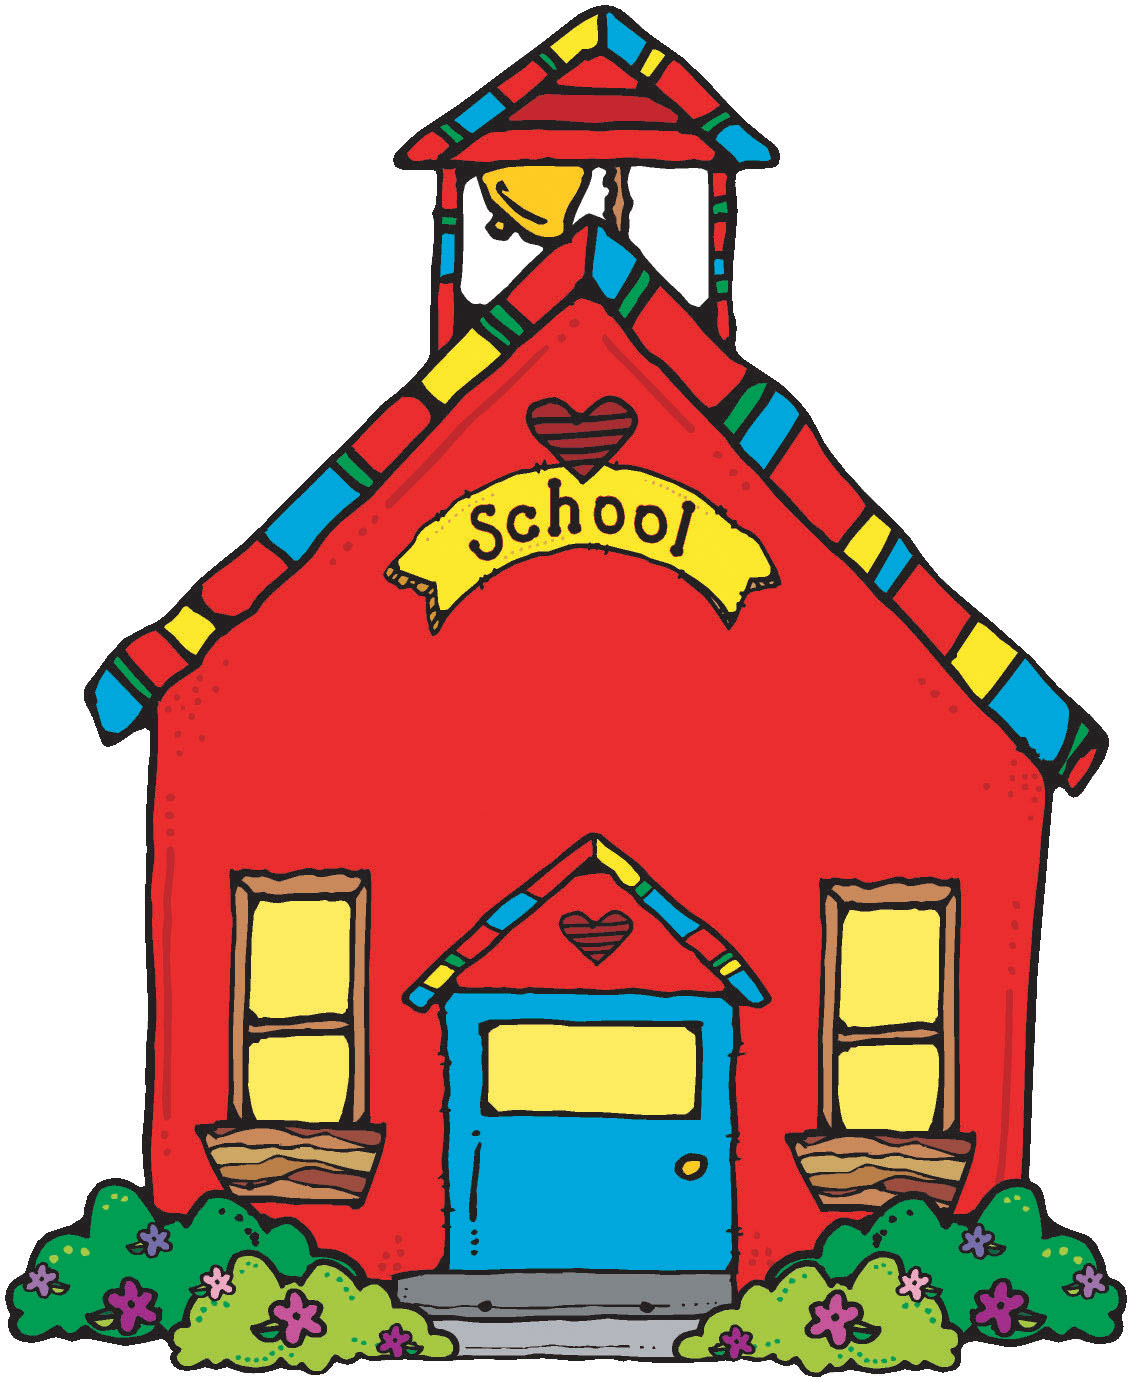 Schoolhouse clip art images